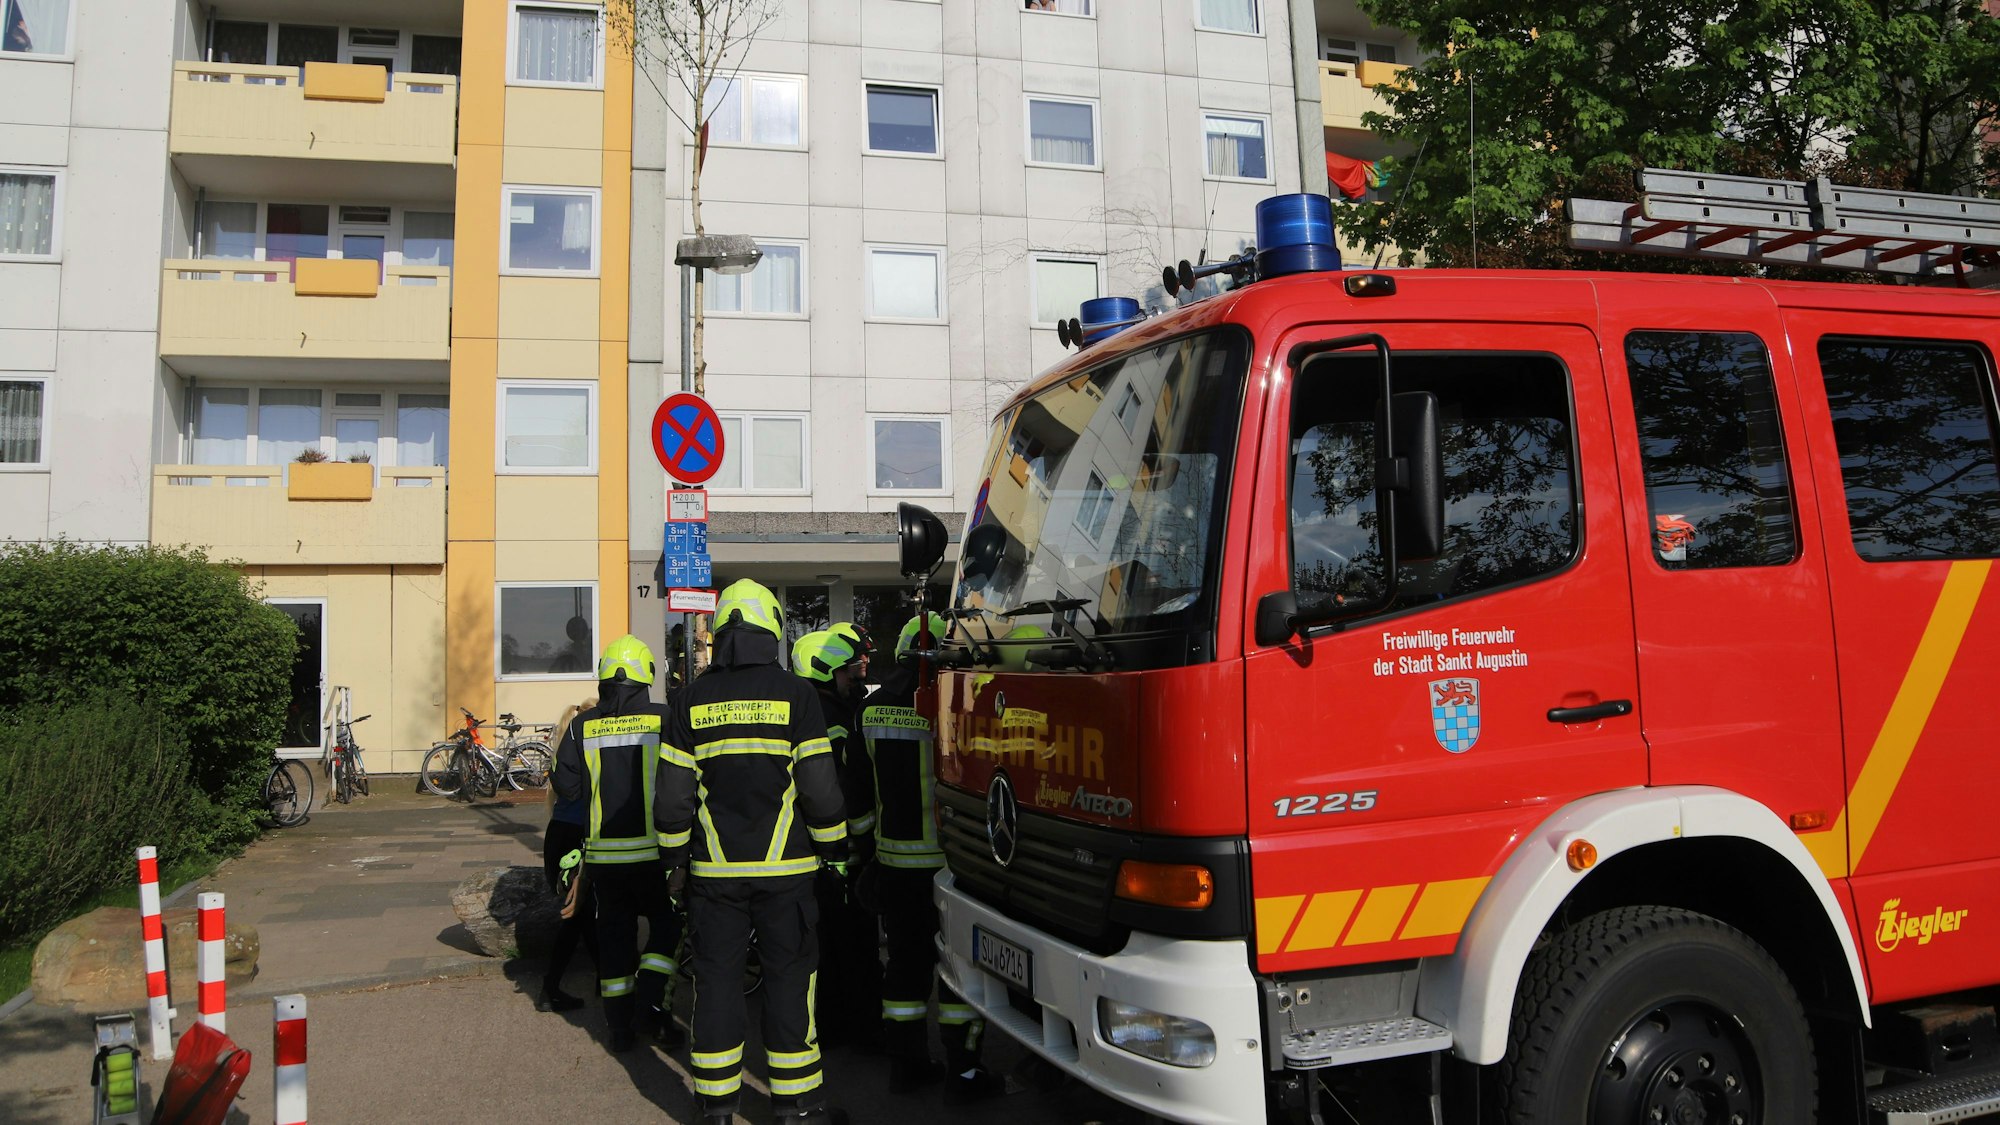 Einsatzkräfte der Feuerwehr stehen neben ihrem Fahrzeug vor einem Hochhaus.